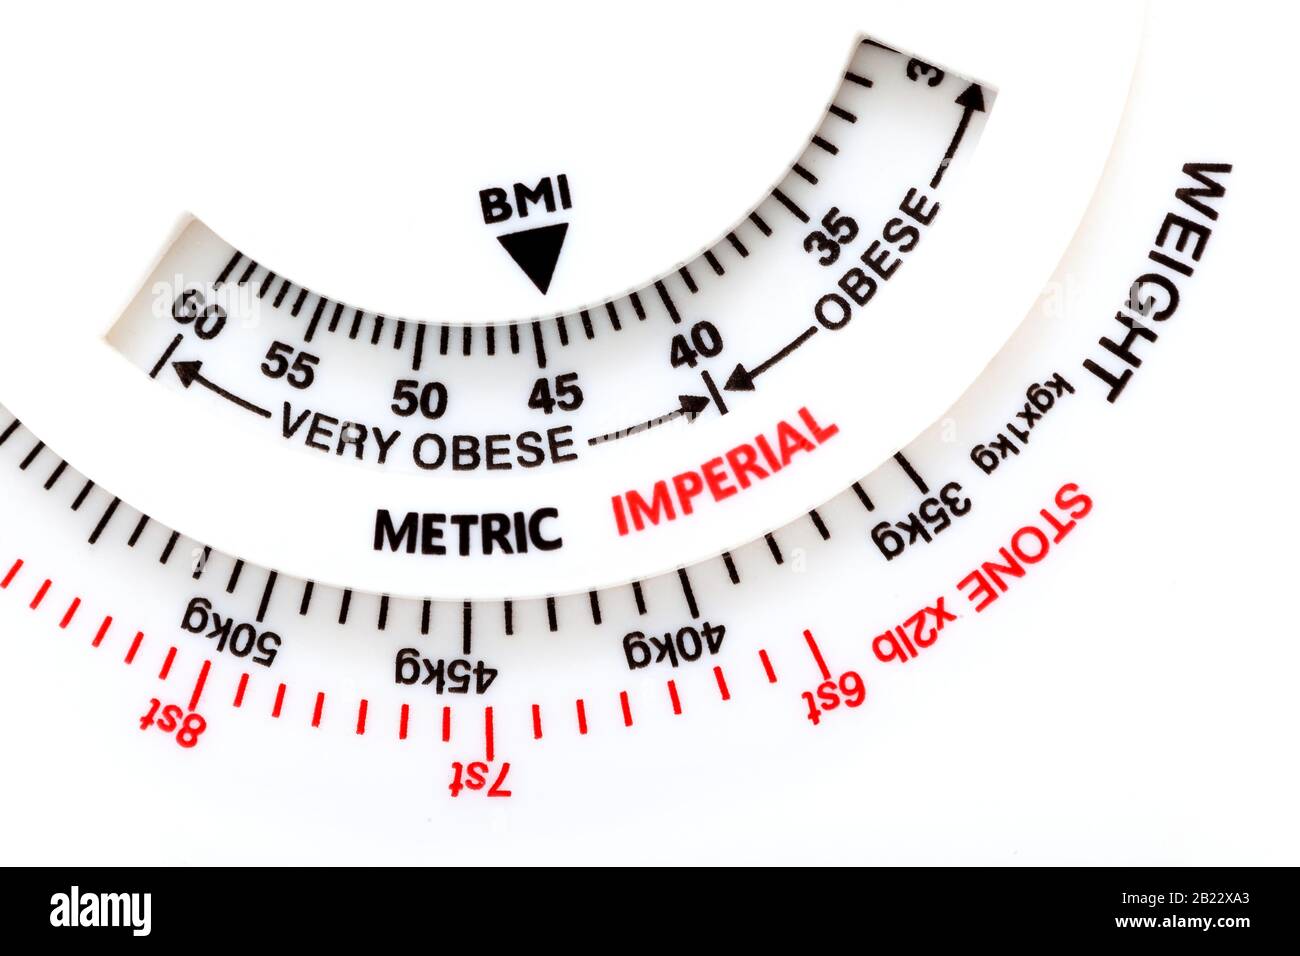 Einfaches BMI-Messgerät für den Body-Mass-Index, Gewichtsmessung,  Adipositas-Problem abstraktes Messen des Gewichts und Berechnen des BMI-Pfeils,  der auf zeigt Stockfotografie - Alamy